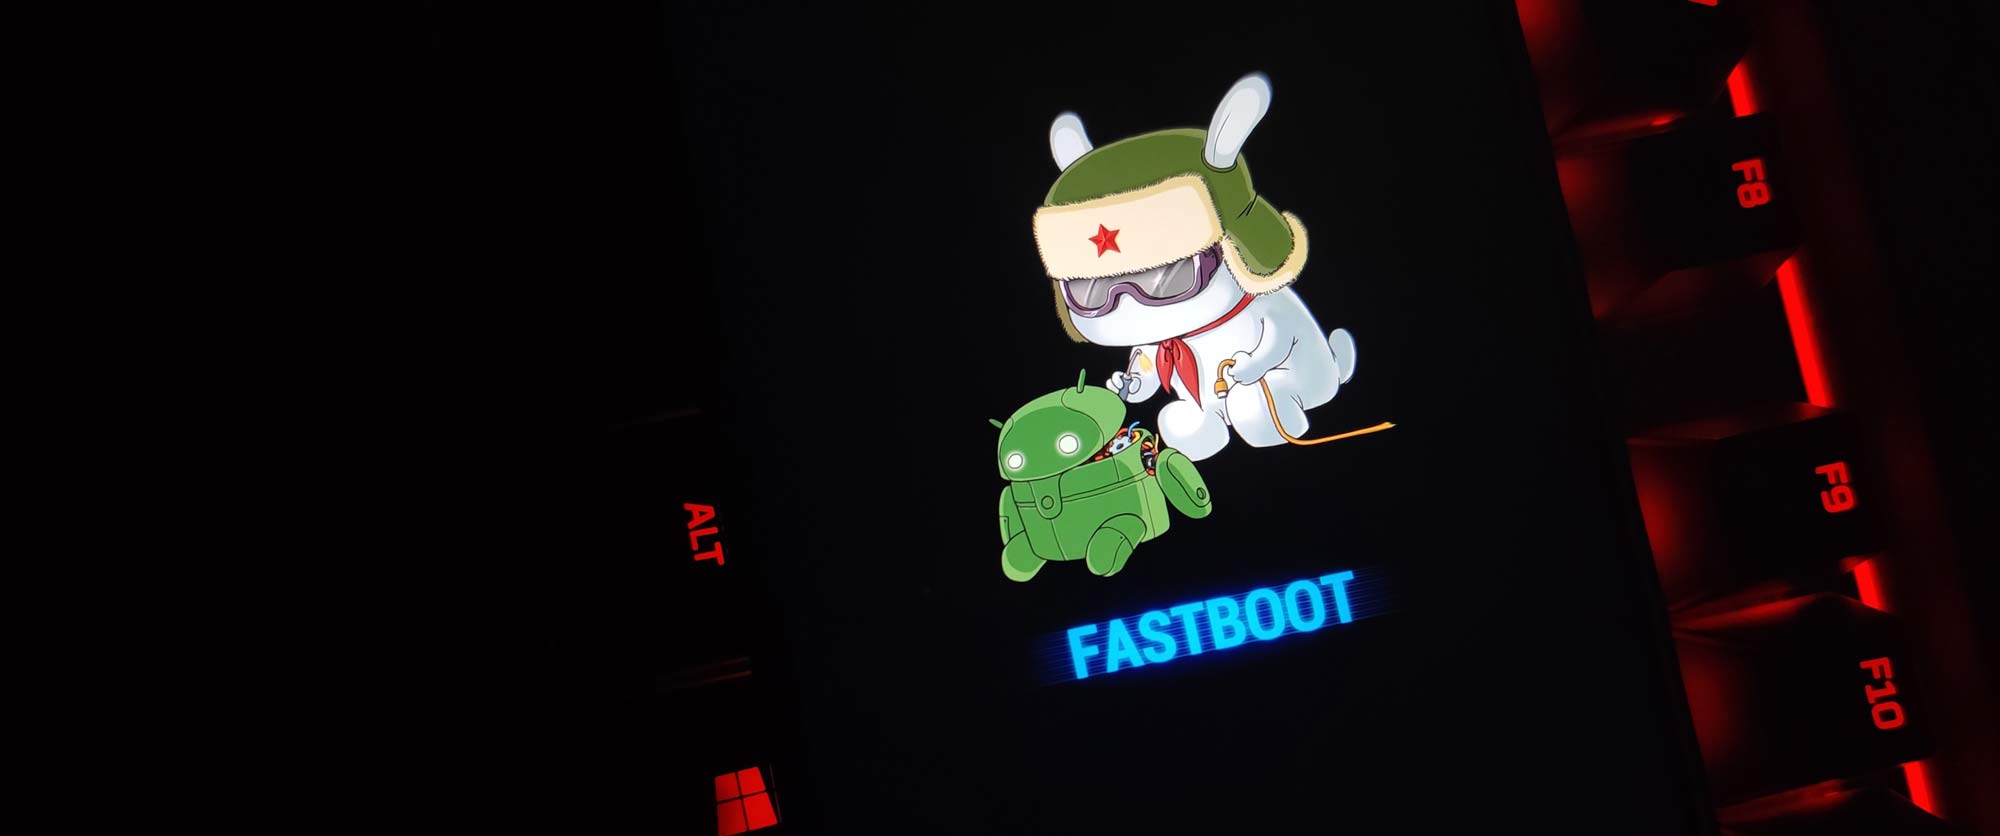 Mi Fastboot logo